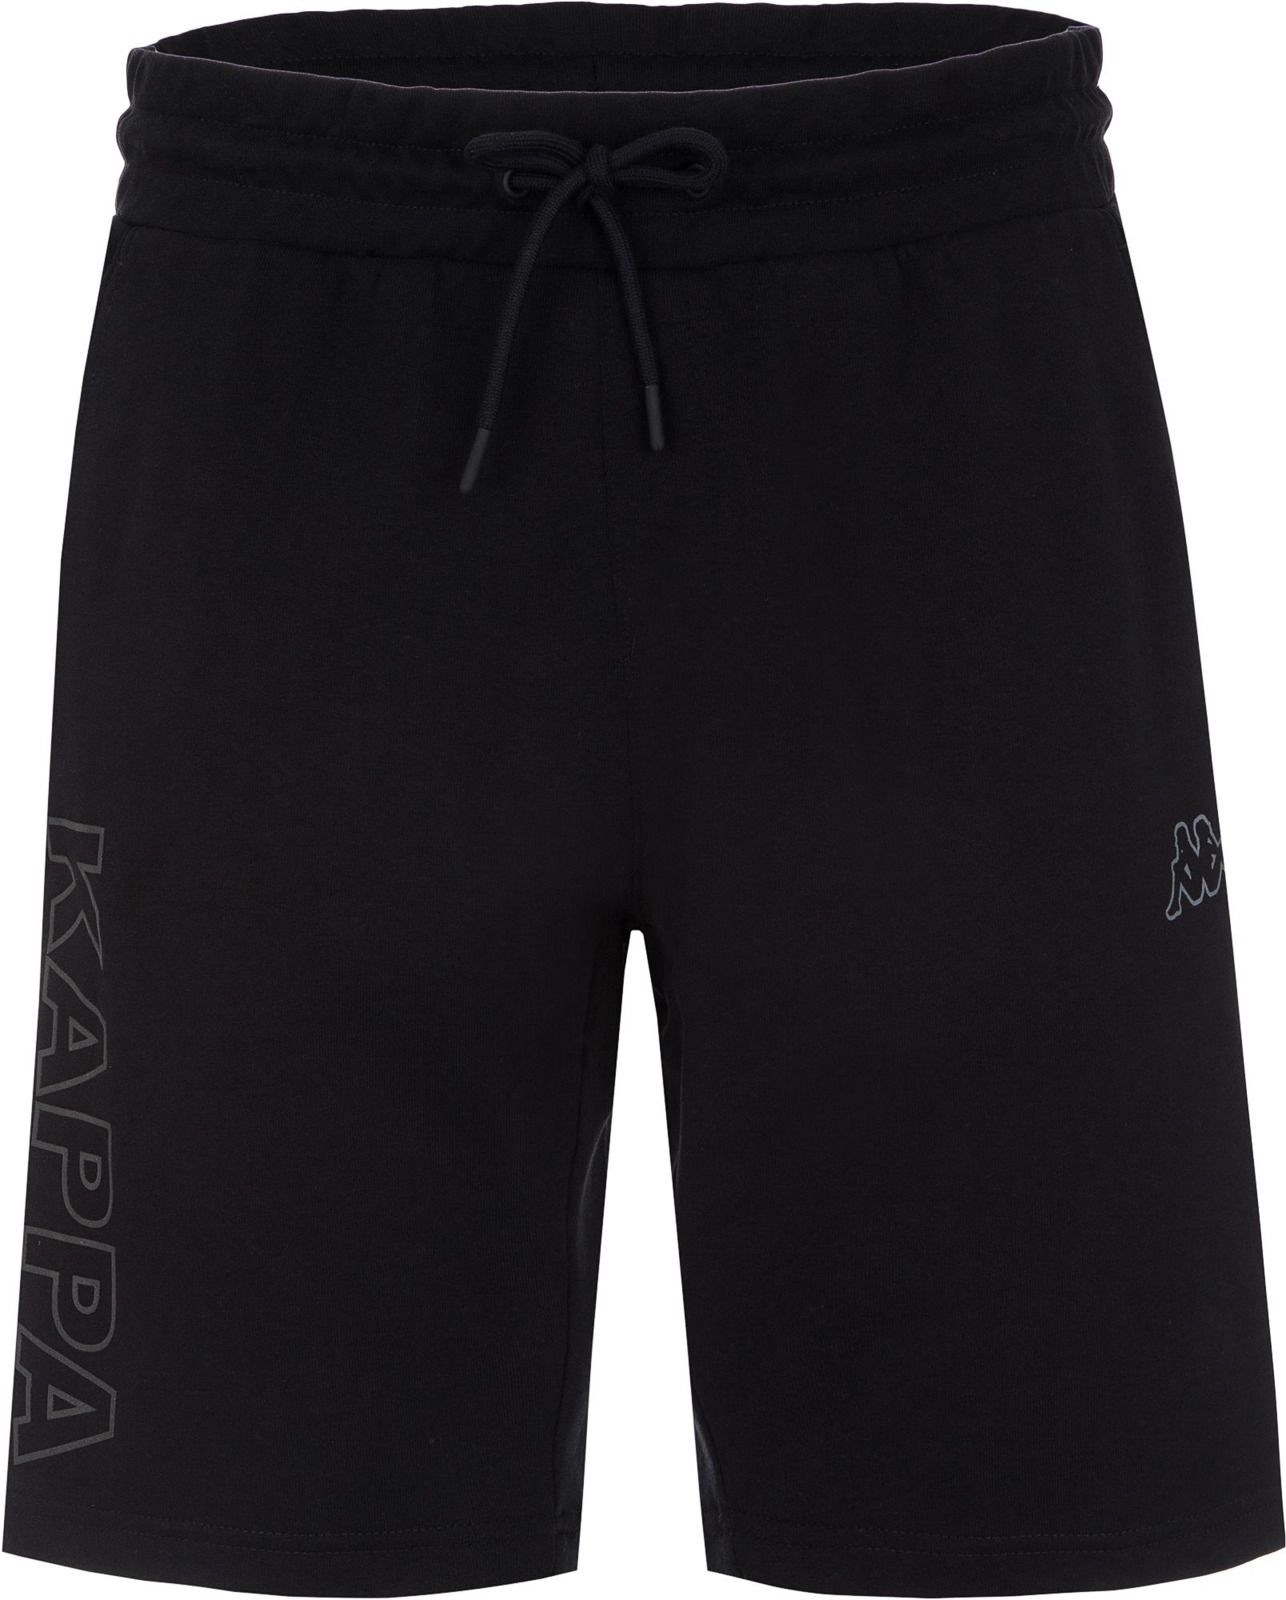   Kappa Men's Shorts, : . 304IDQ0-99.  XL (52)